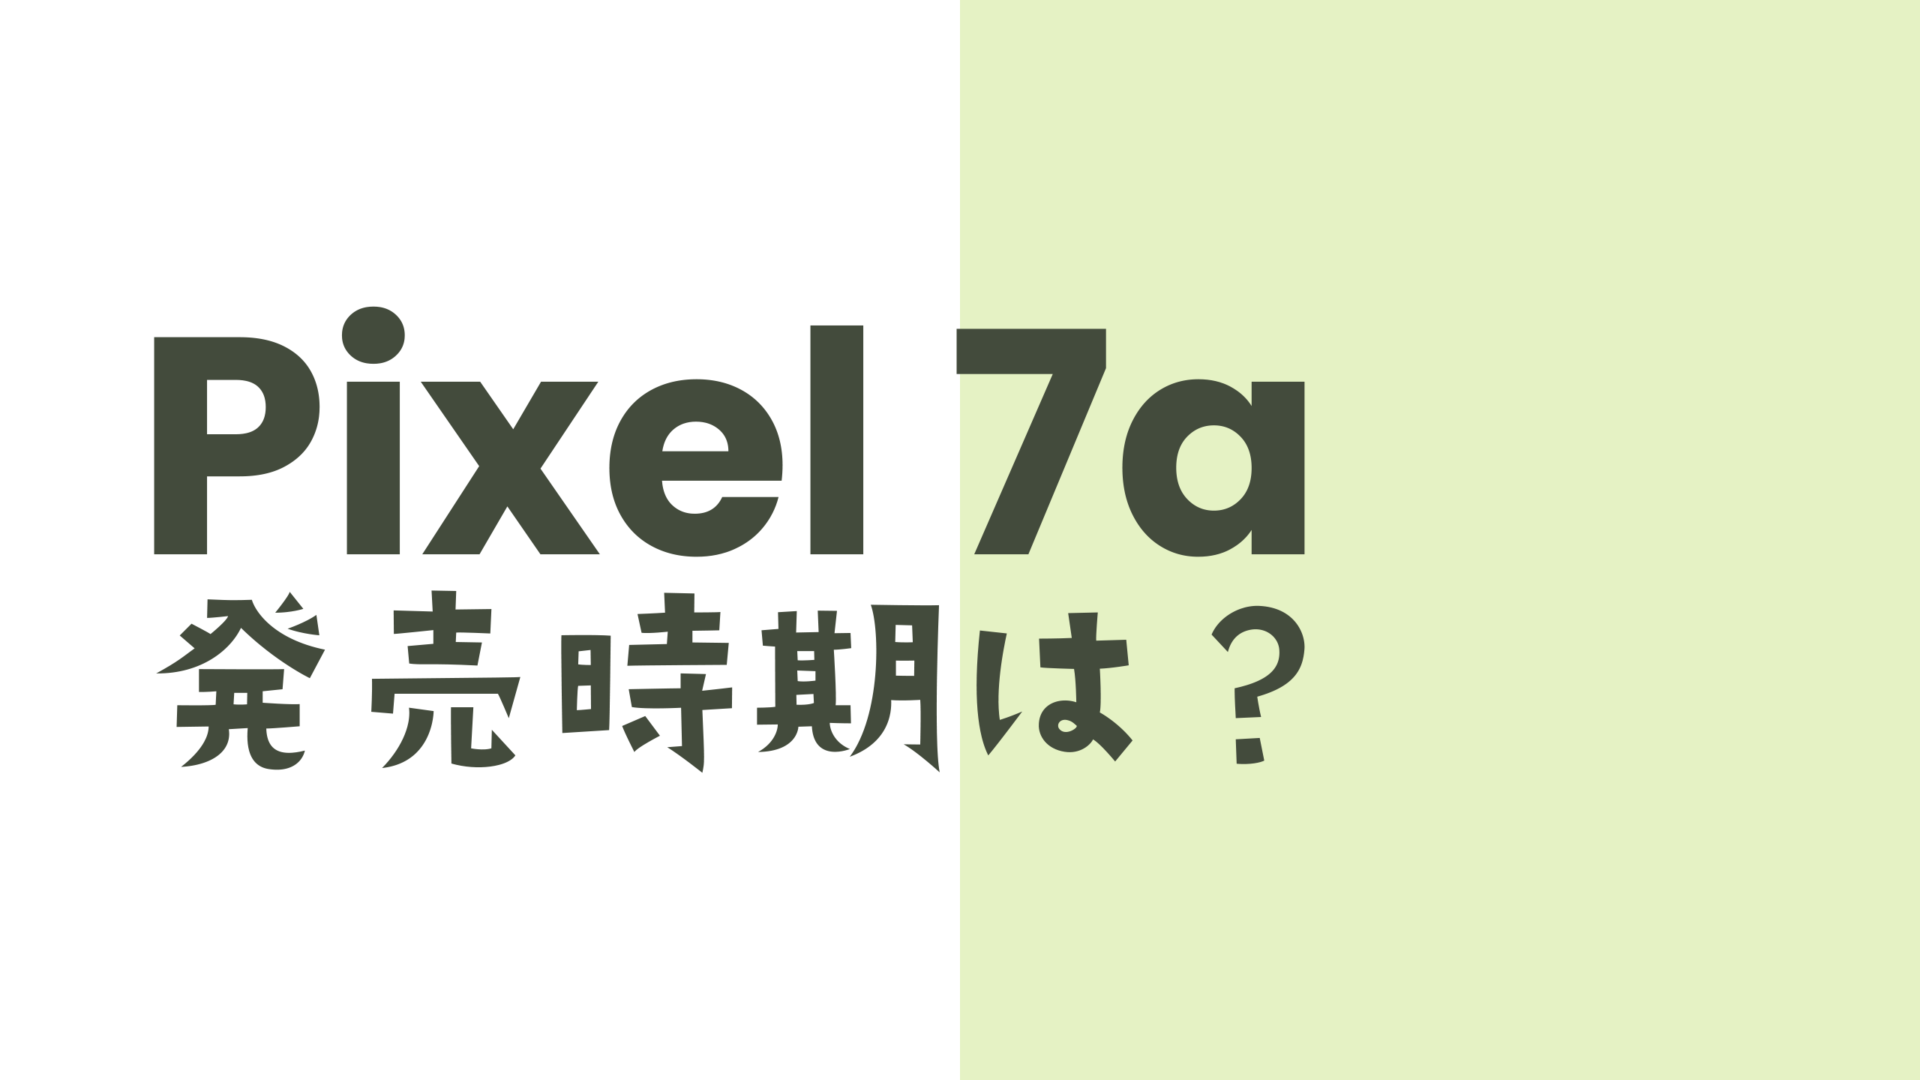 Google Pixel 7aの発売時期は2023年のいつ？【ピクセル7a】のサムネイル画像